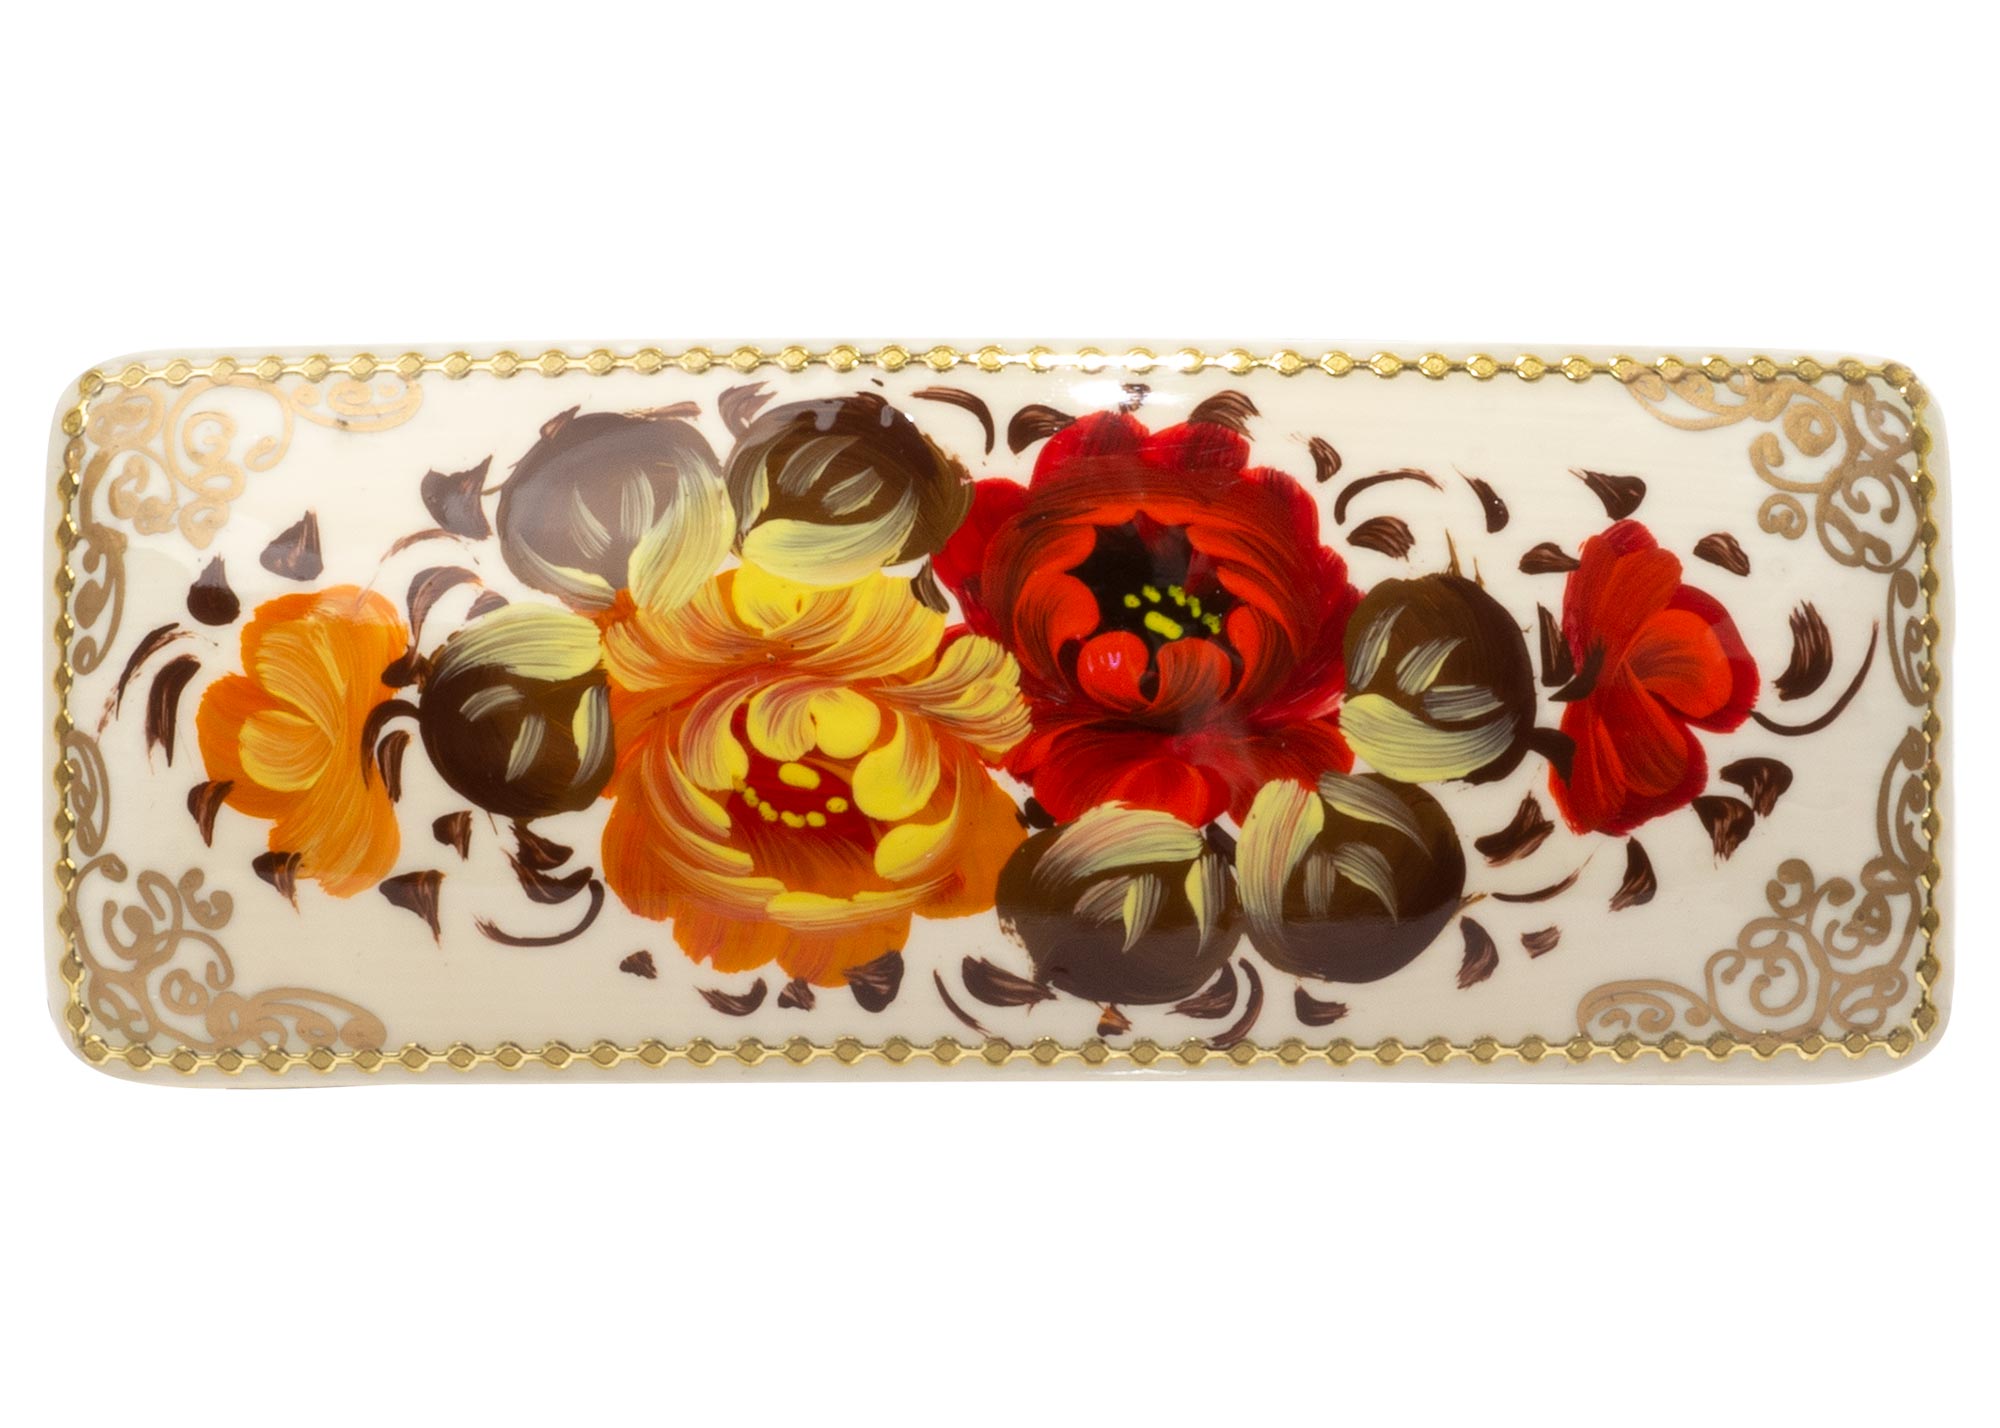 Buy Russian Floral Bar Barrette at GoldenCockerel.com